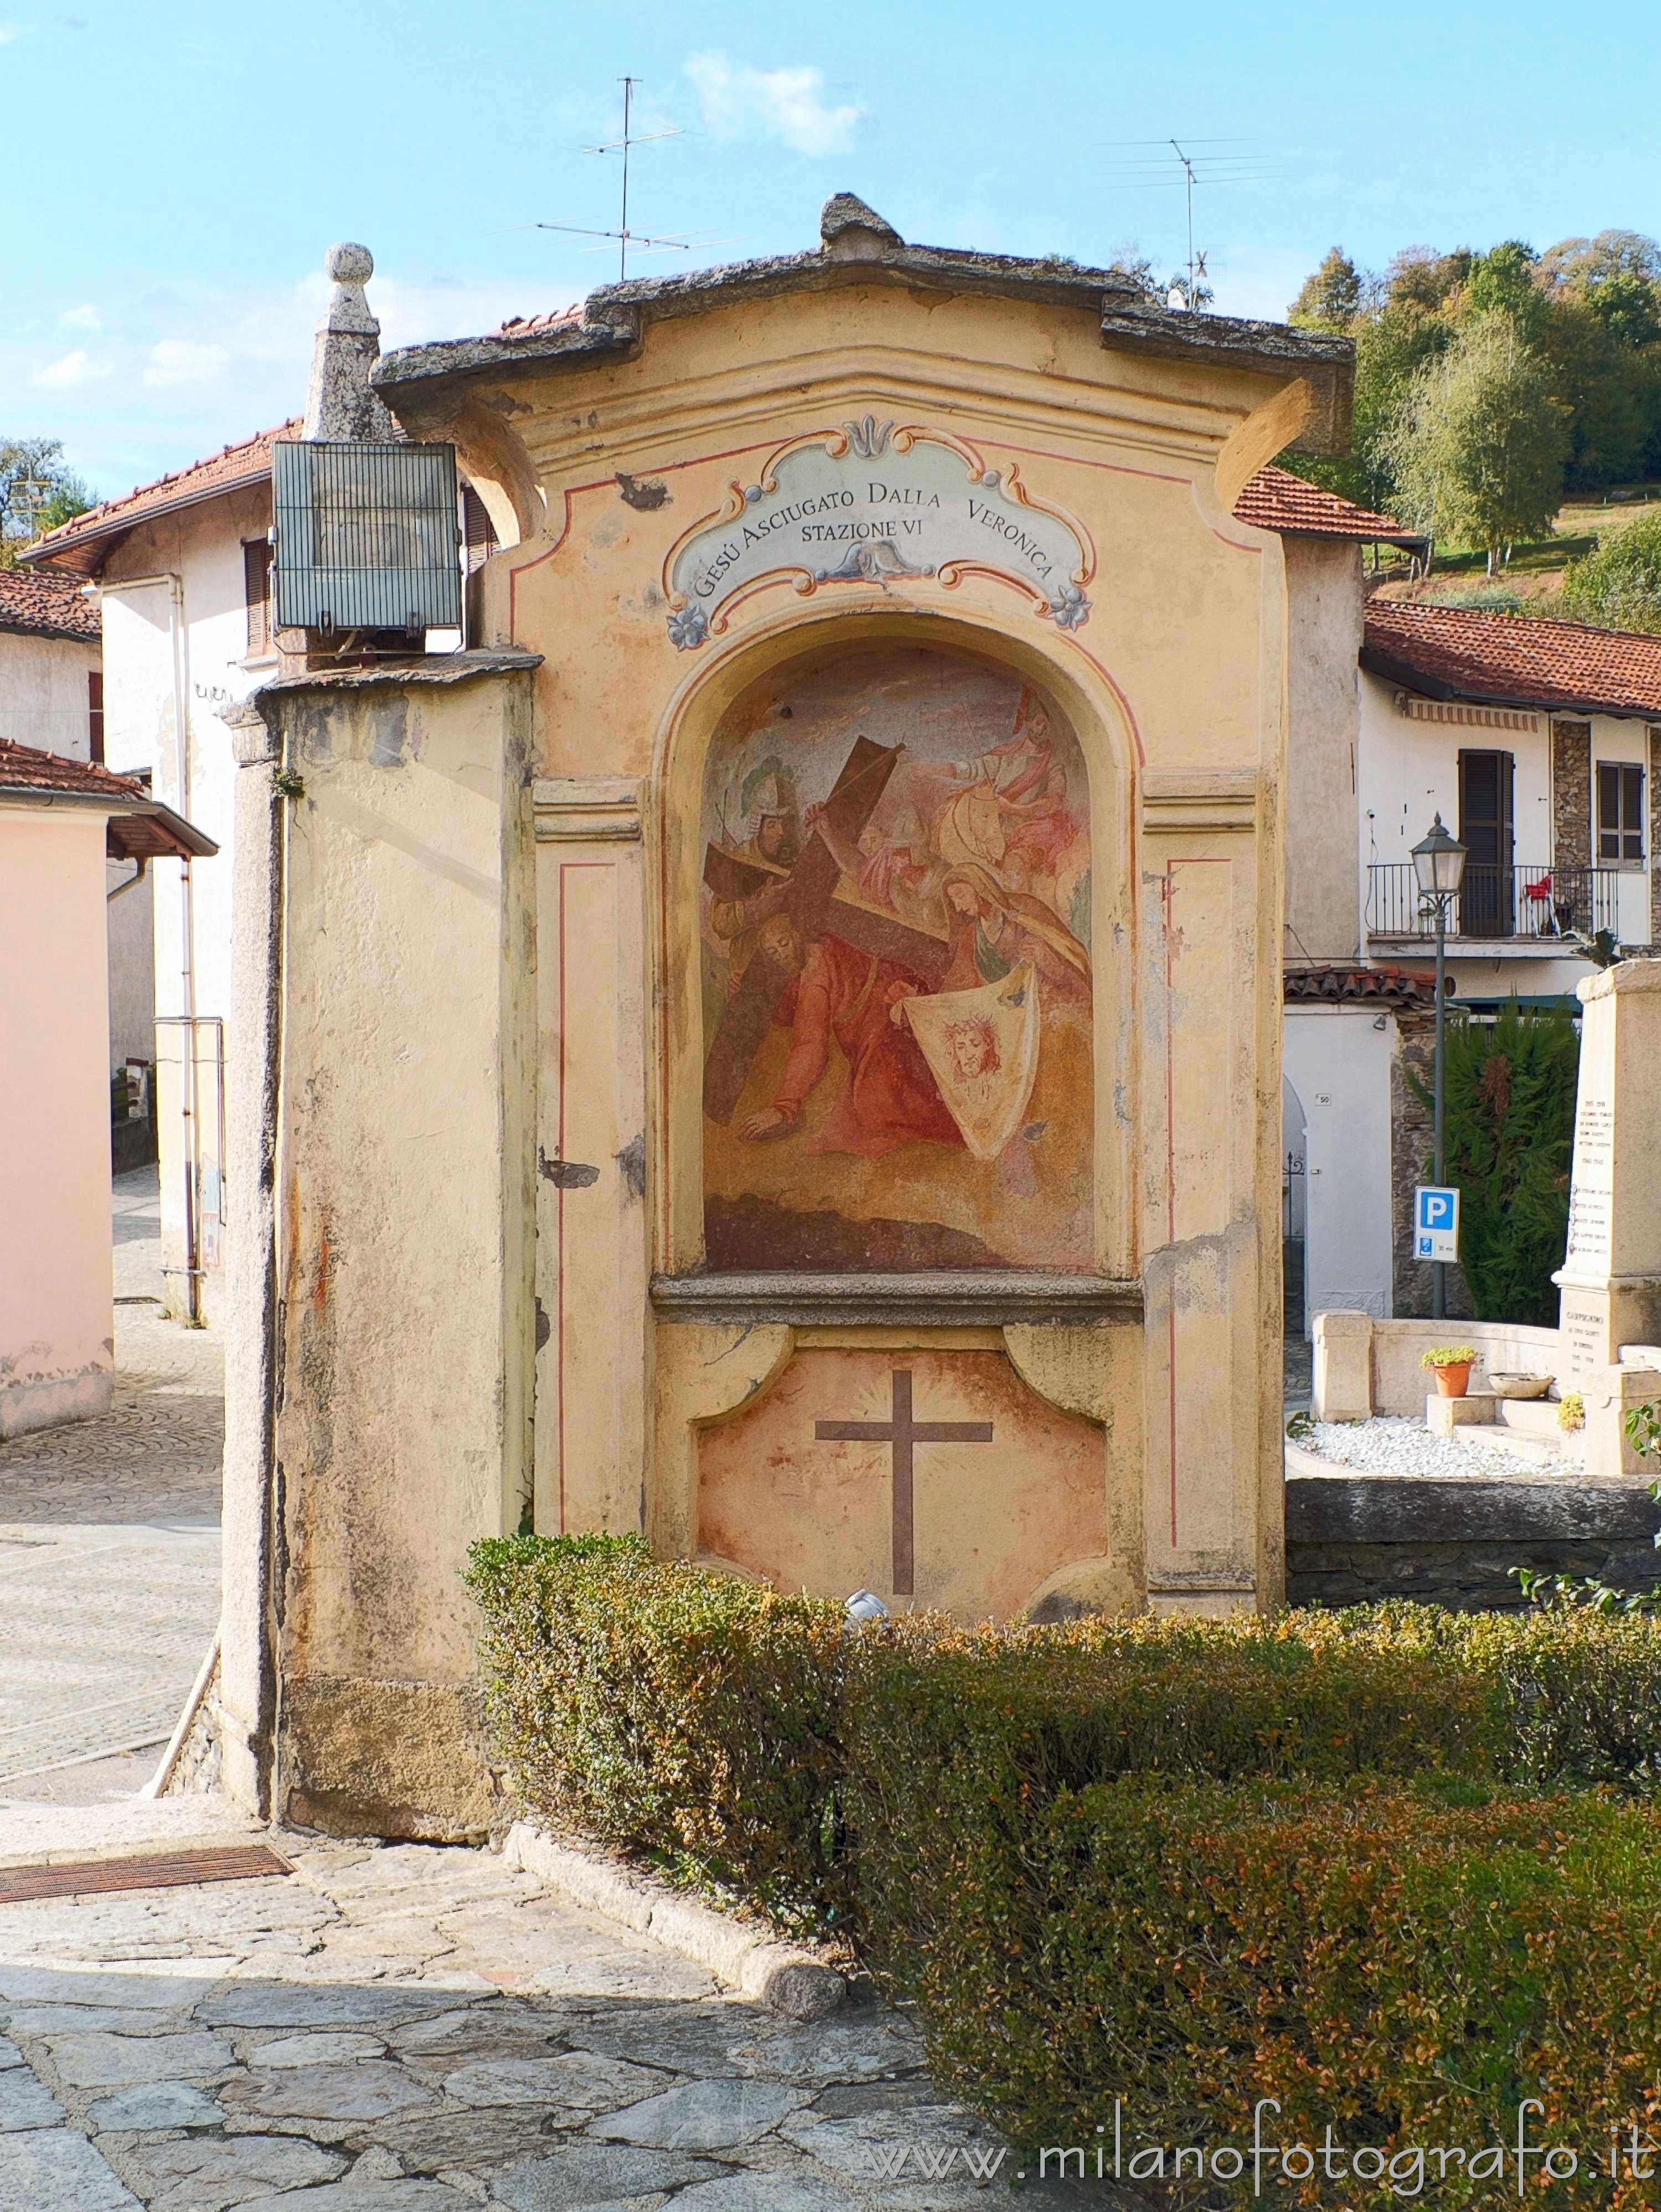 Brovello-Carpugnino (Verbano-Cusio-Ossola, Italy): Sixth station of the via crucis located around the Church of San Donato - Brovello-Carpugnino (Verbano-Cusio-Ossola, Italy)